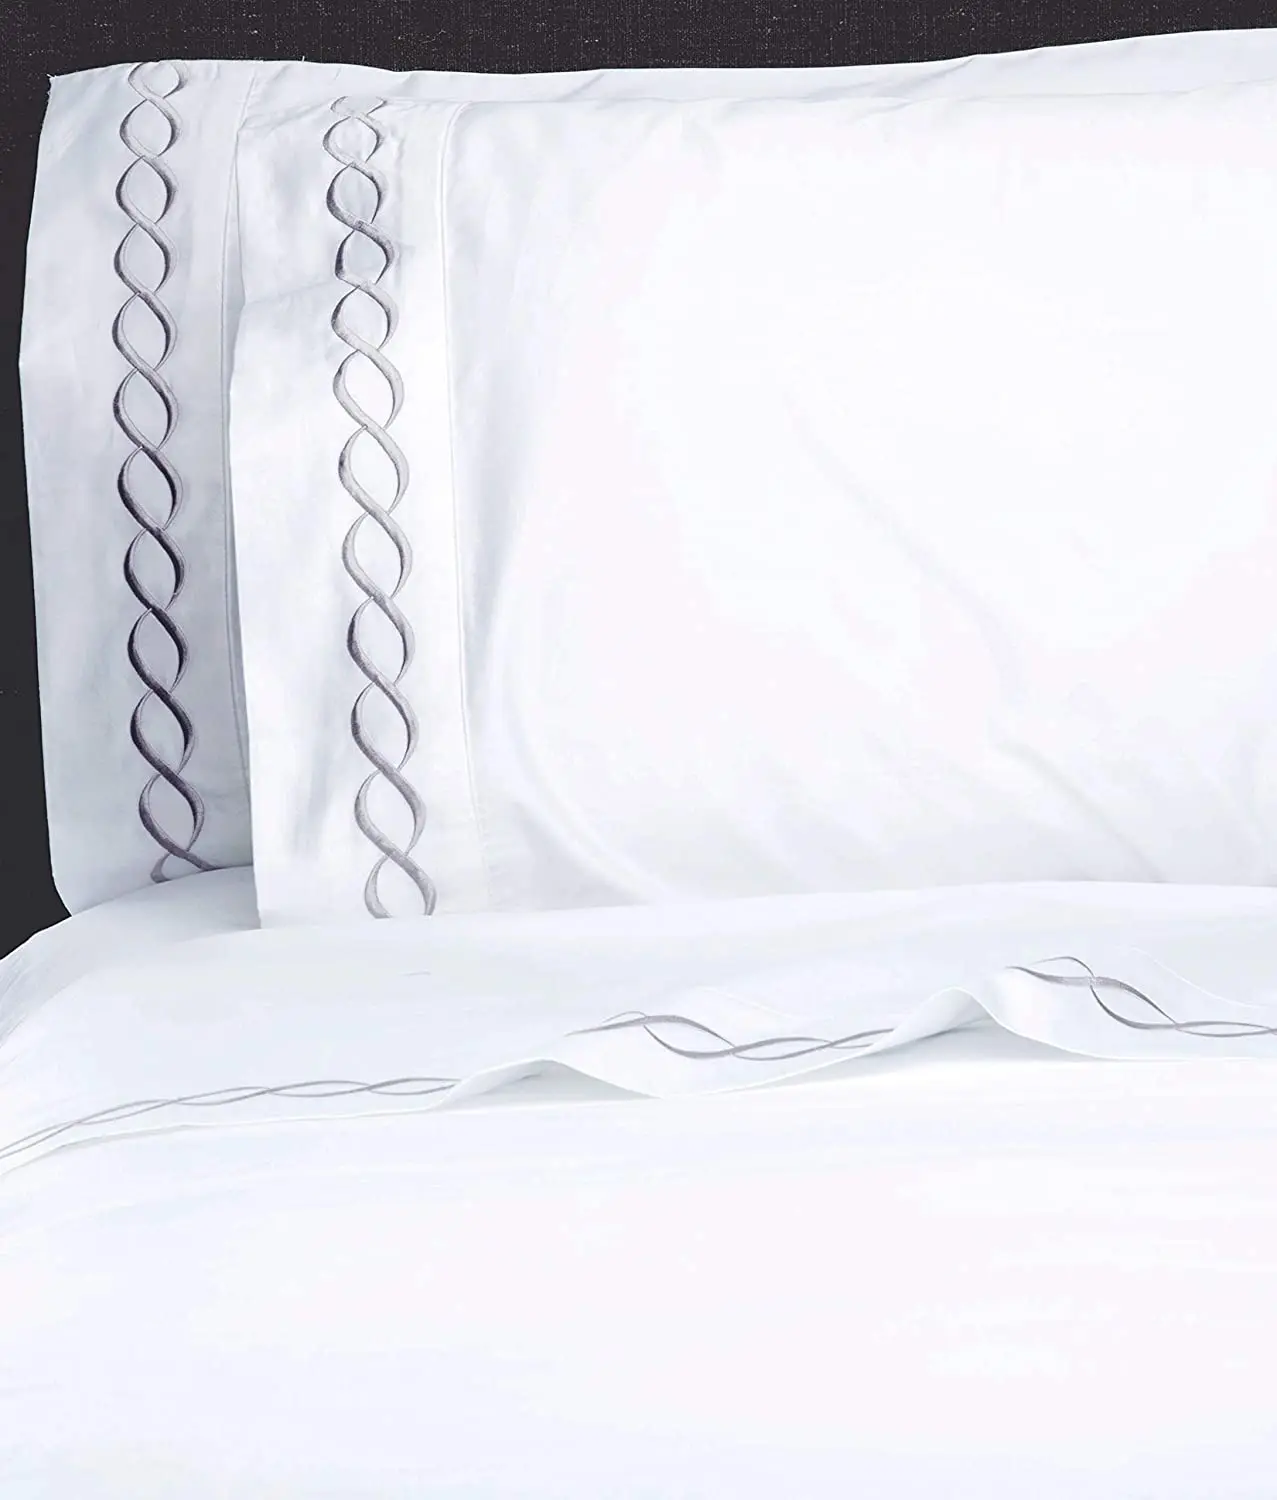 Роскошный отель мягкая кожа Премиум-линии вышивка 7 штук одеяло постельные принадлежности комплект 100% хлопок